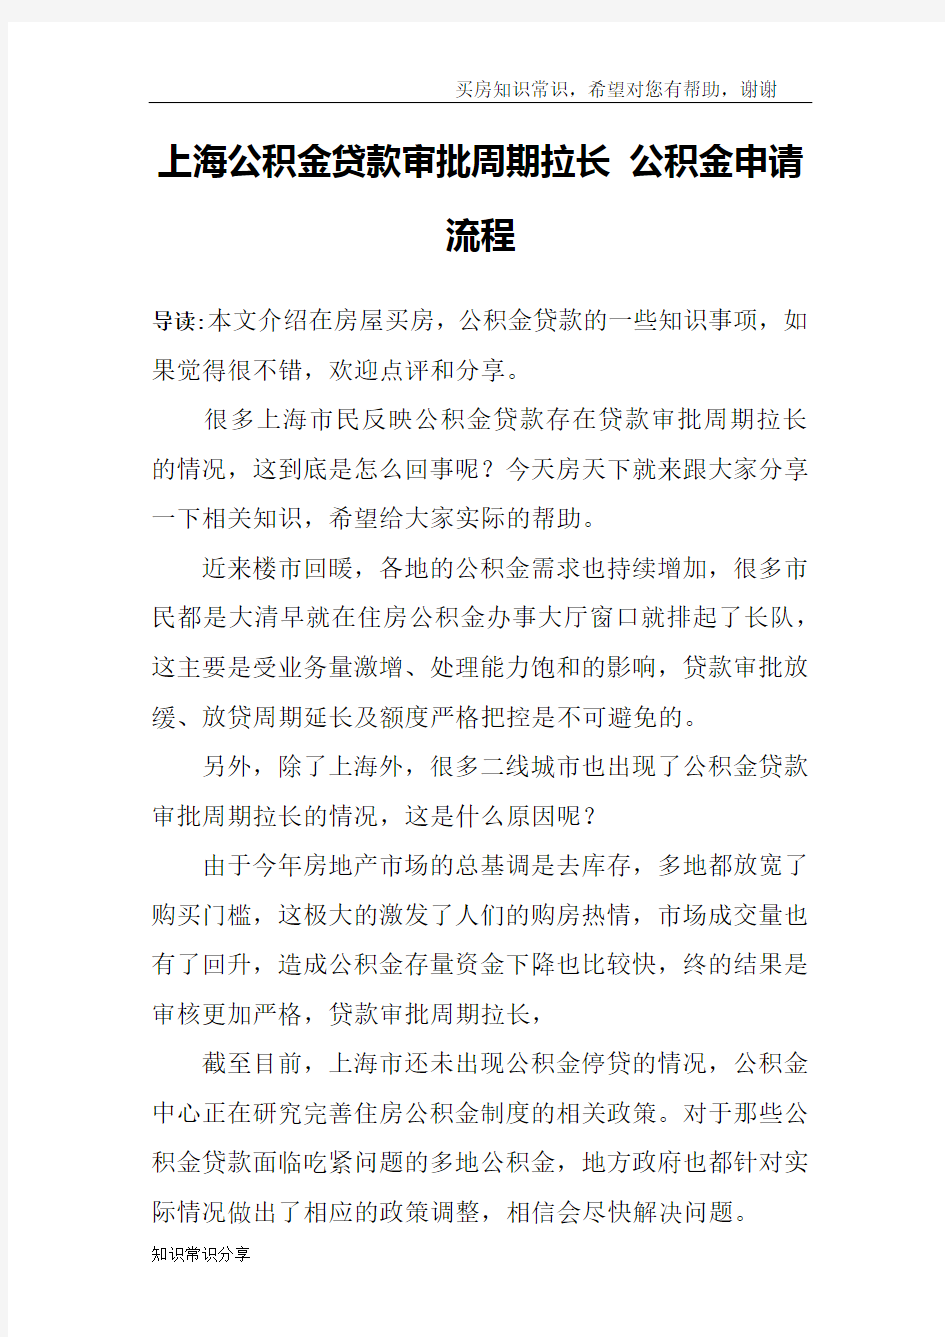 上海公积金贷款审批周期拉长 公积金申请流程